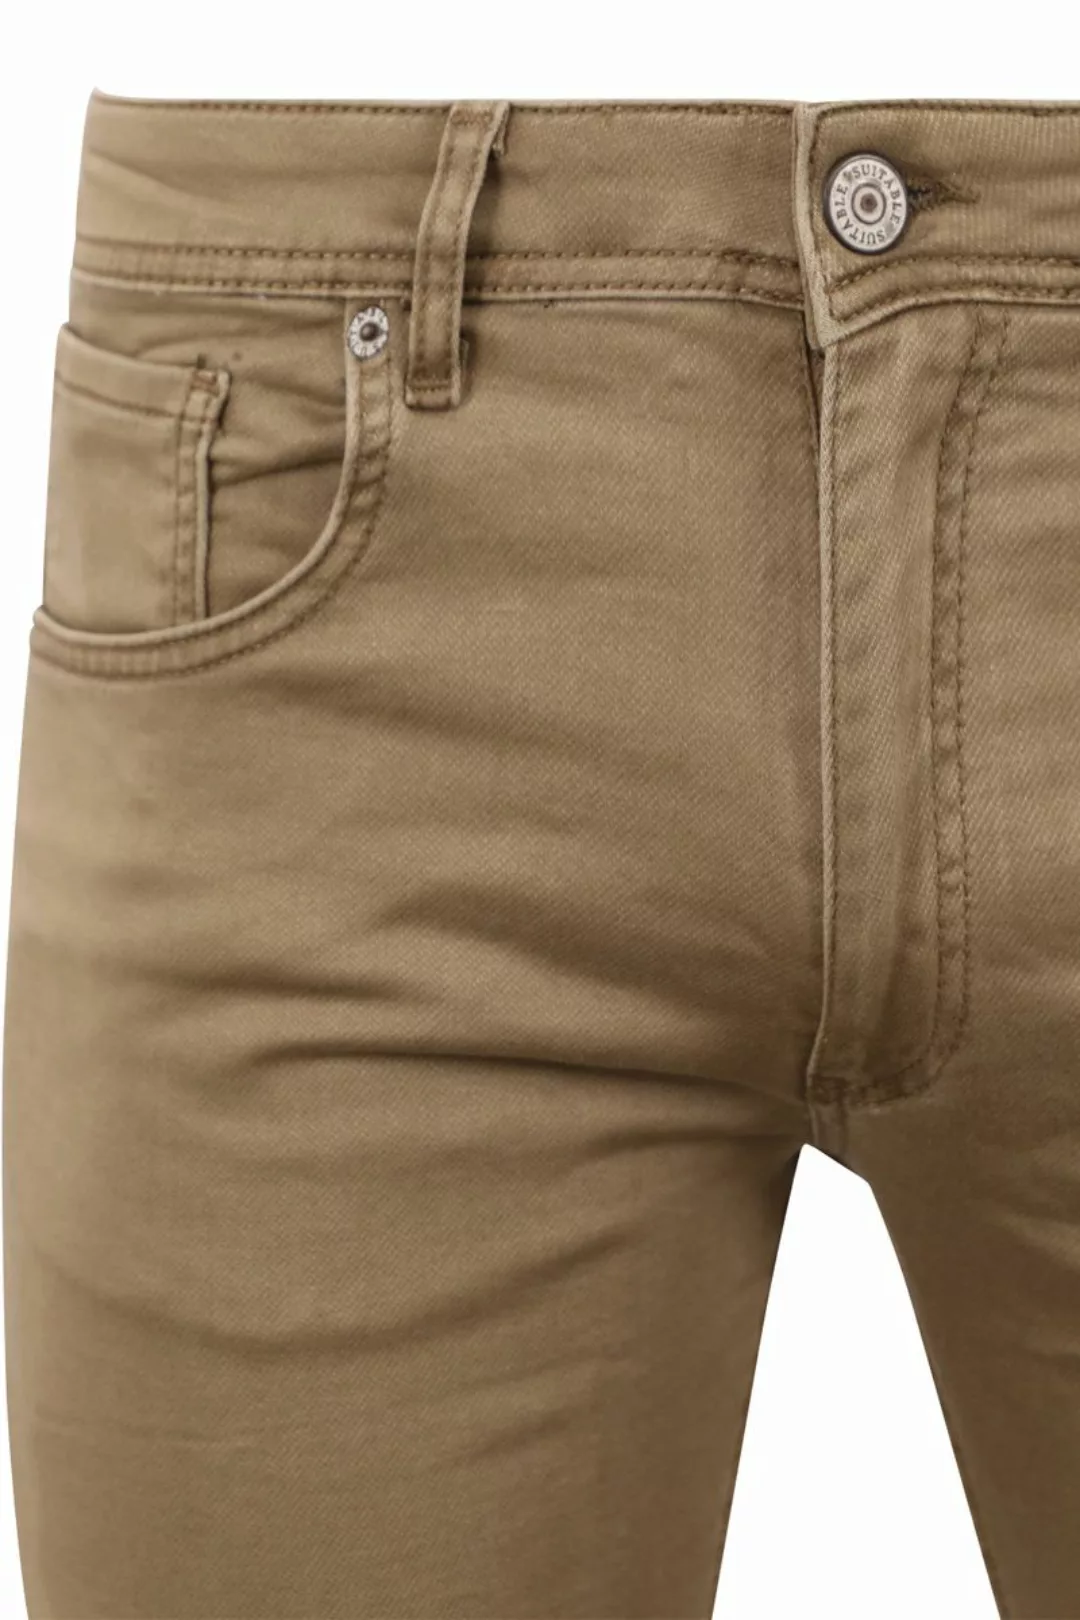 Suitable Kant Jeans Khaki - Größe W 34 - L 34 günstig online kaufen